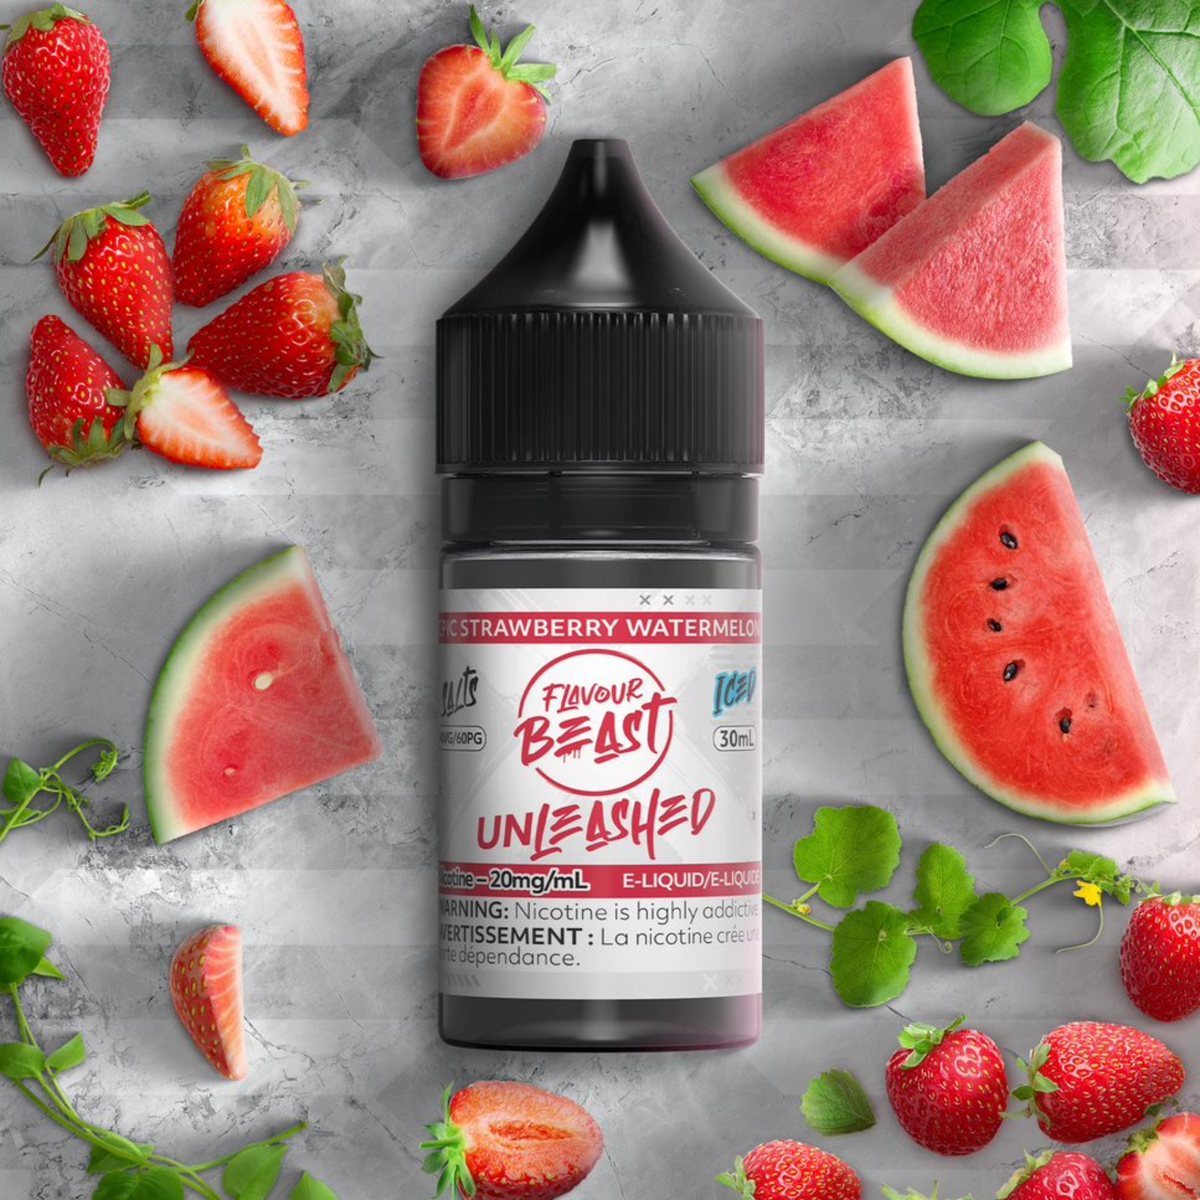 Unleashed E-Liquid - Epic Strawberry Watermelon